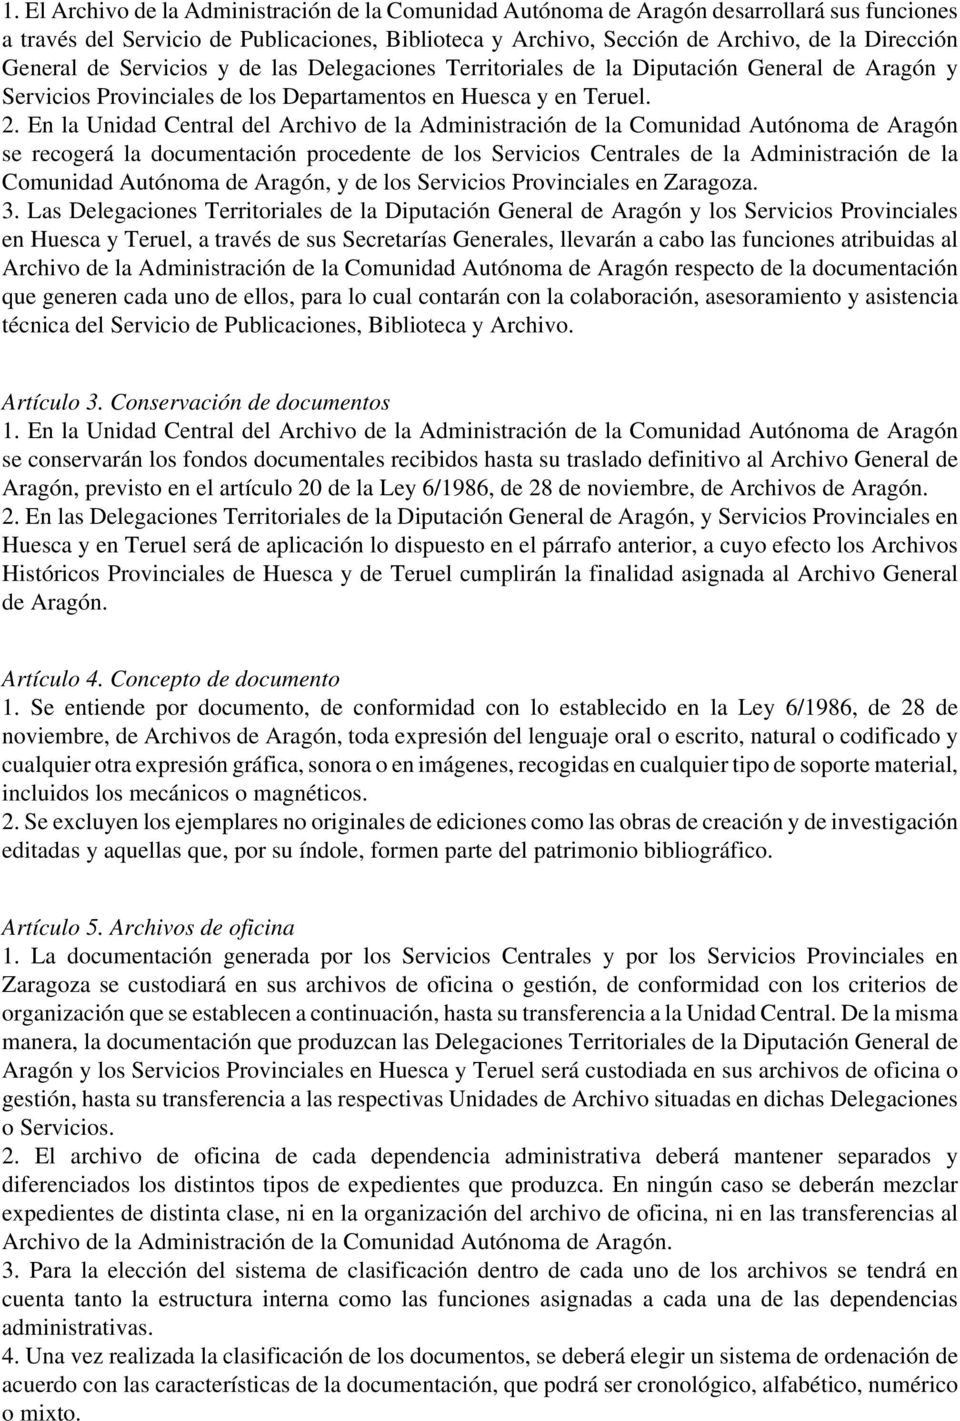 En la Unidad Central del Archivo de la Administración de la Comunidad Autónoma de Aragón se recogerá la documentación procedente de los Servicios Centrales de la Administración de la Comunidad